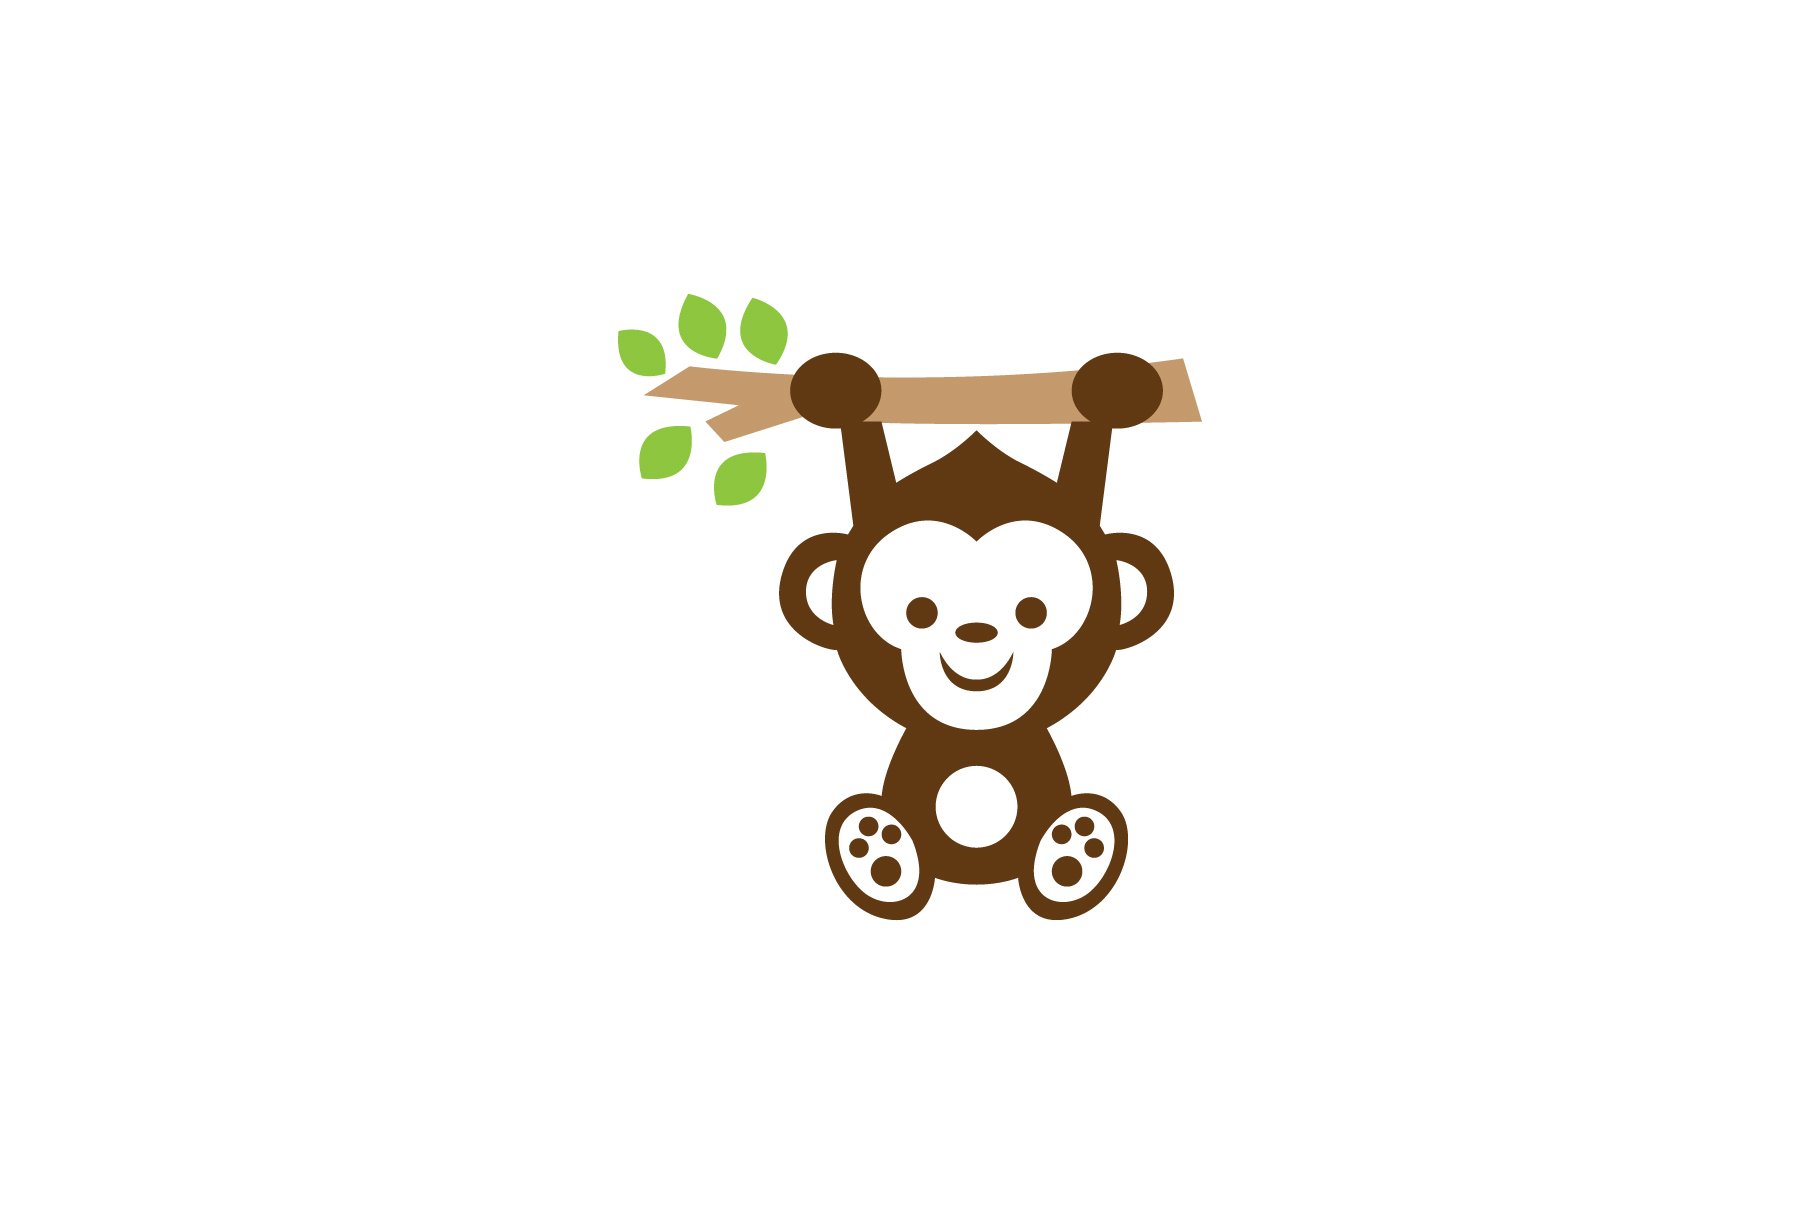 Monkey Logo cover image.